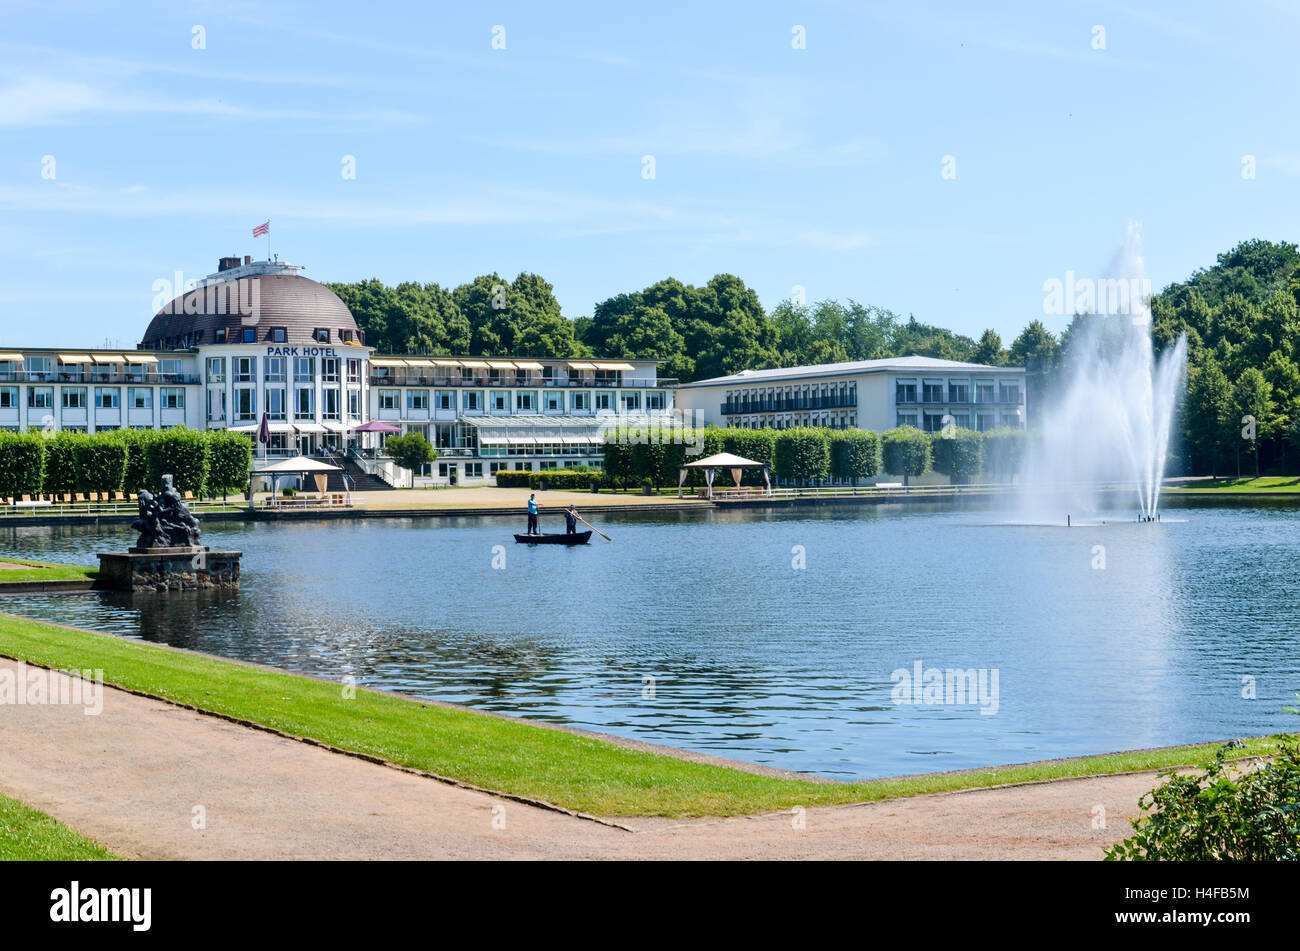 Park Hotel e il lago Hollersee, Brema, Germania Foto Stock